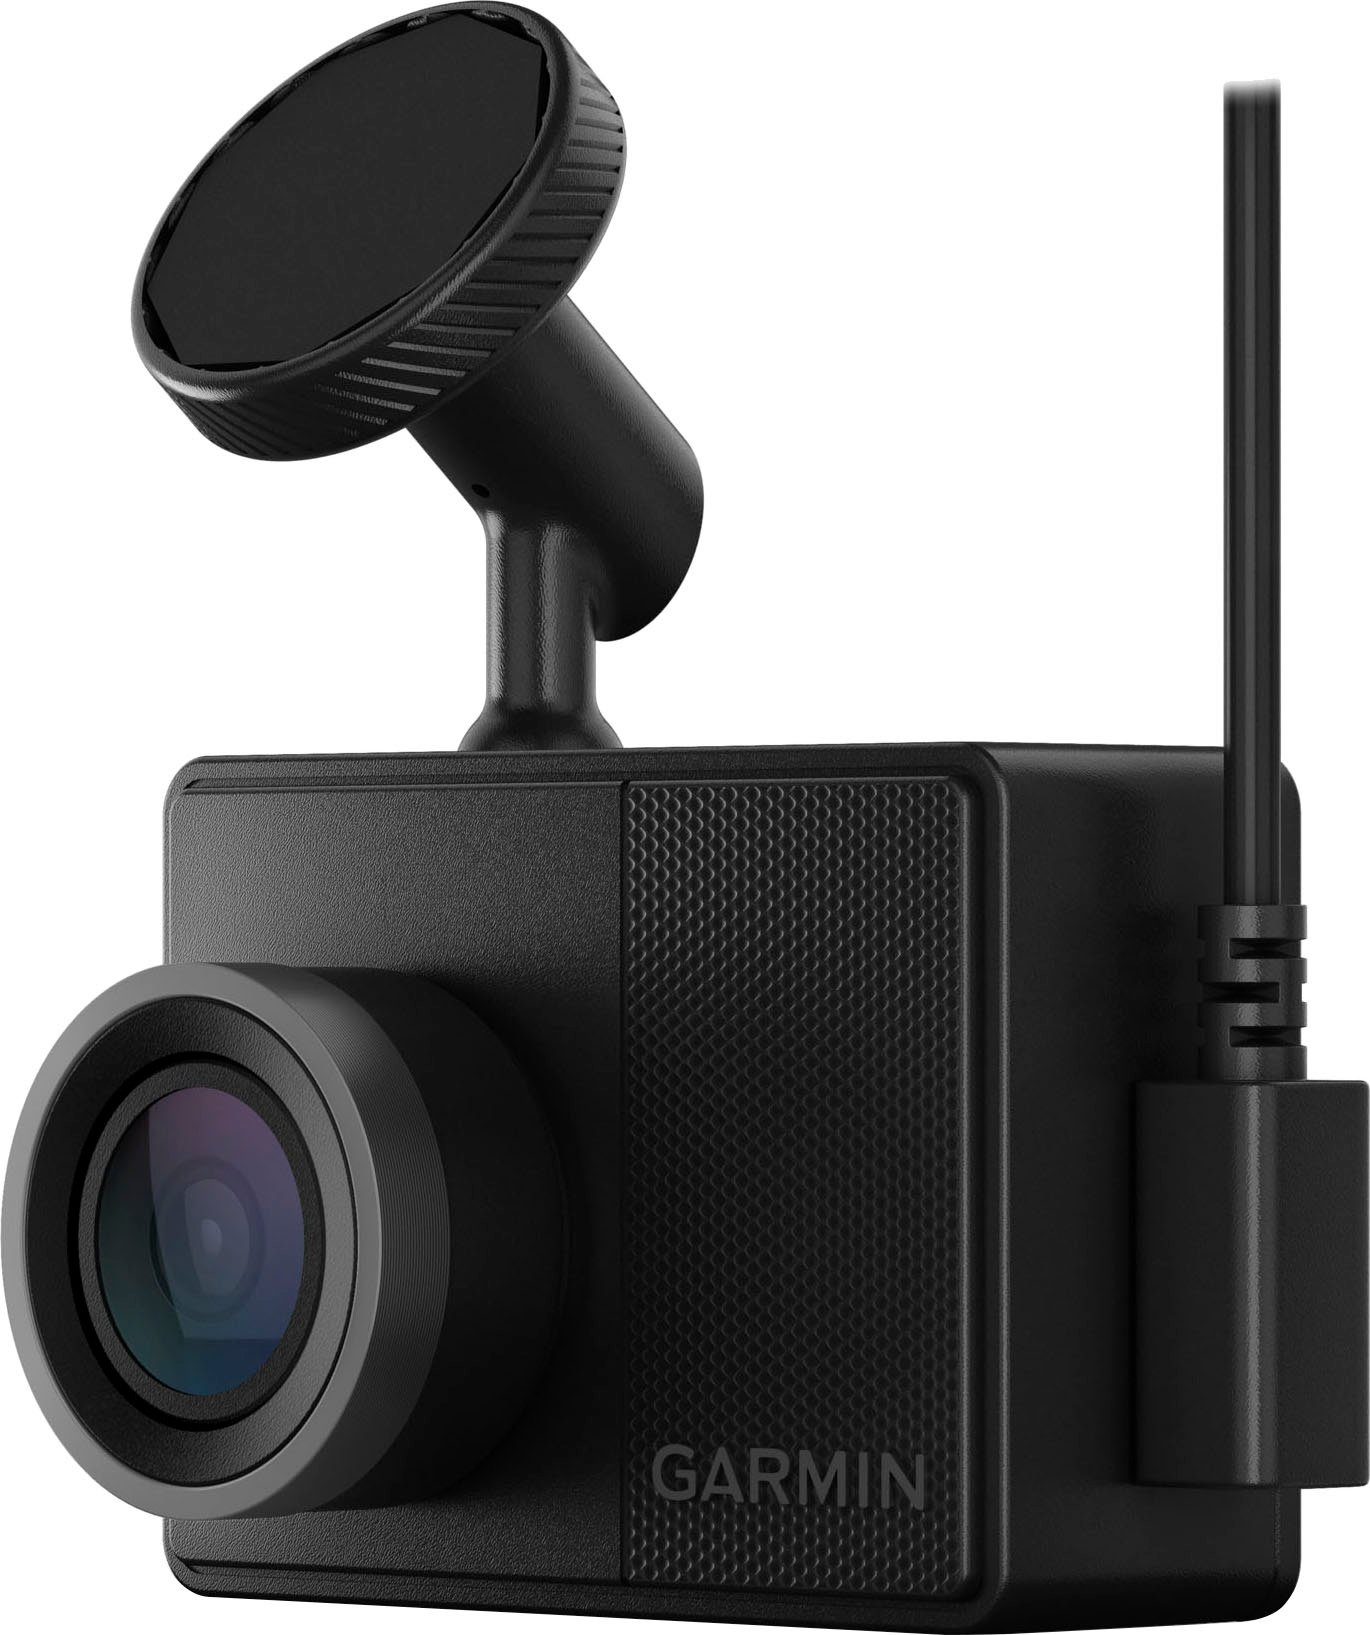 (Wi-Fi) 57 (WQHD, Bluetooth, Dashcam WLAN Garmin Dash Cam™